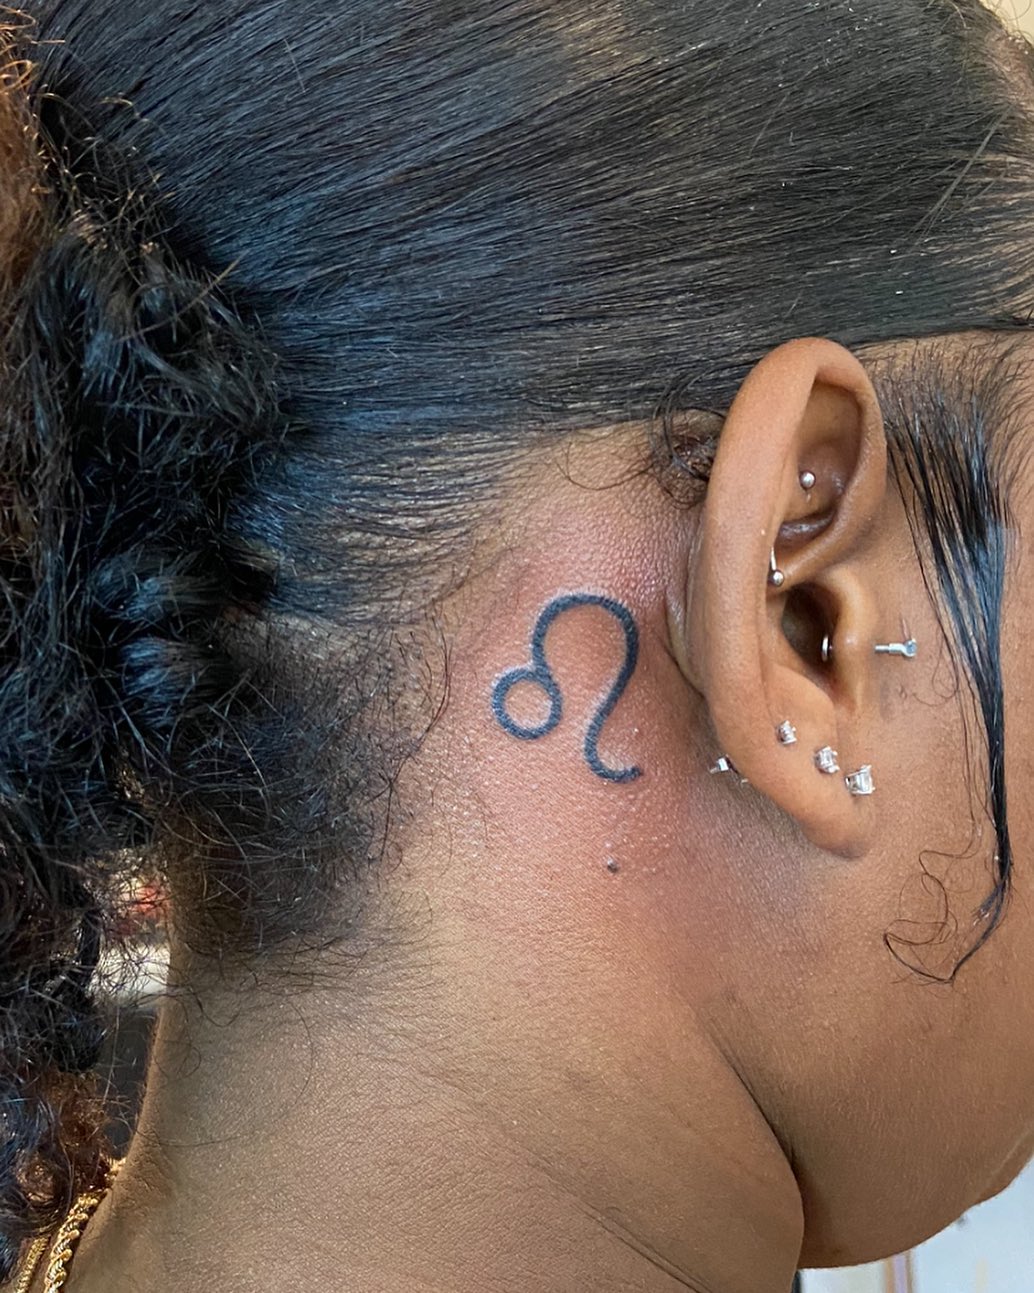 Diseño de tatuaje de zodiaco detrás de la oreja.